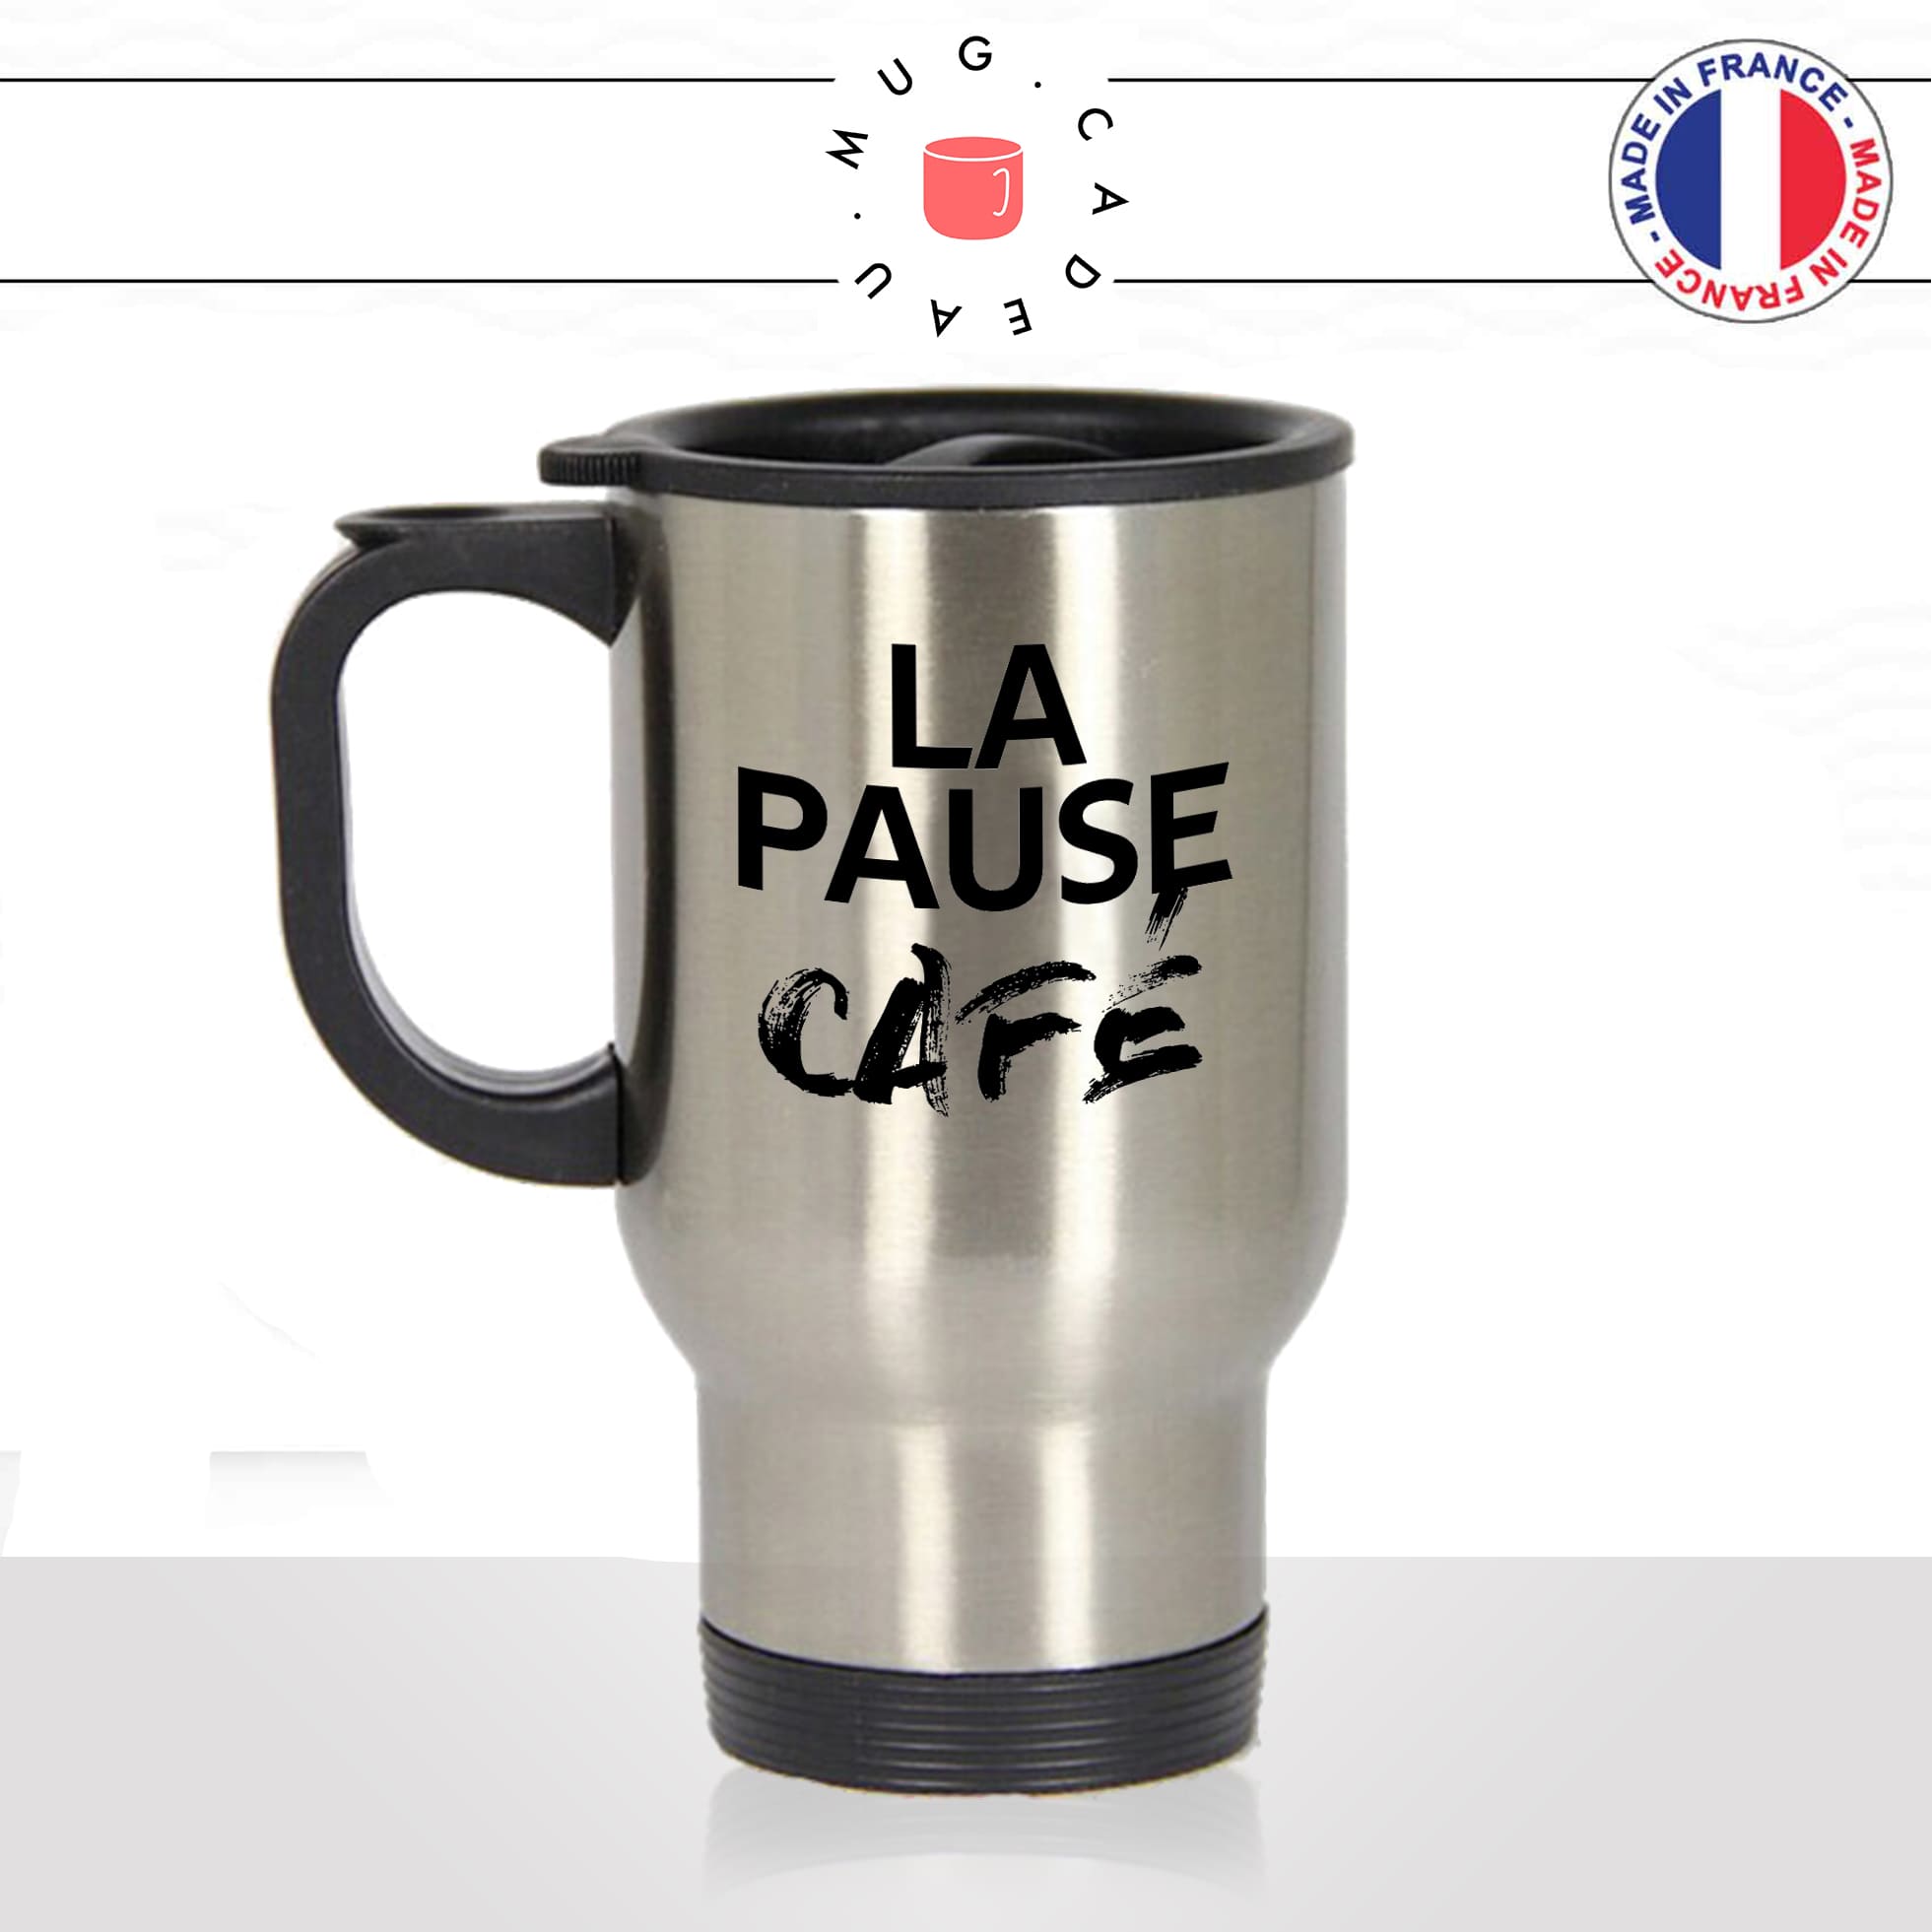 mug-tasse-thermos-isotherme-voyage-la-pause-café-thé-collegue-travail-boulot-homme-femme-accro-humour-fun-idée-cadeau-originale-cool